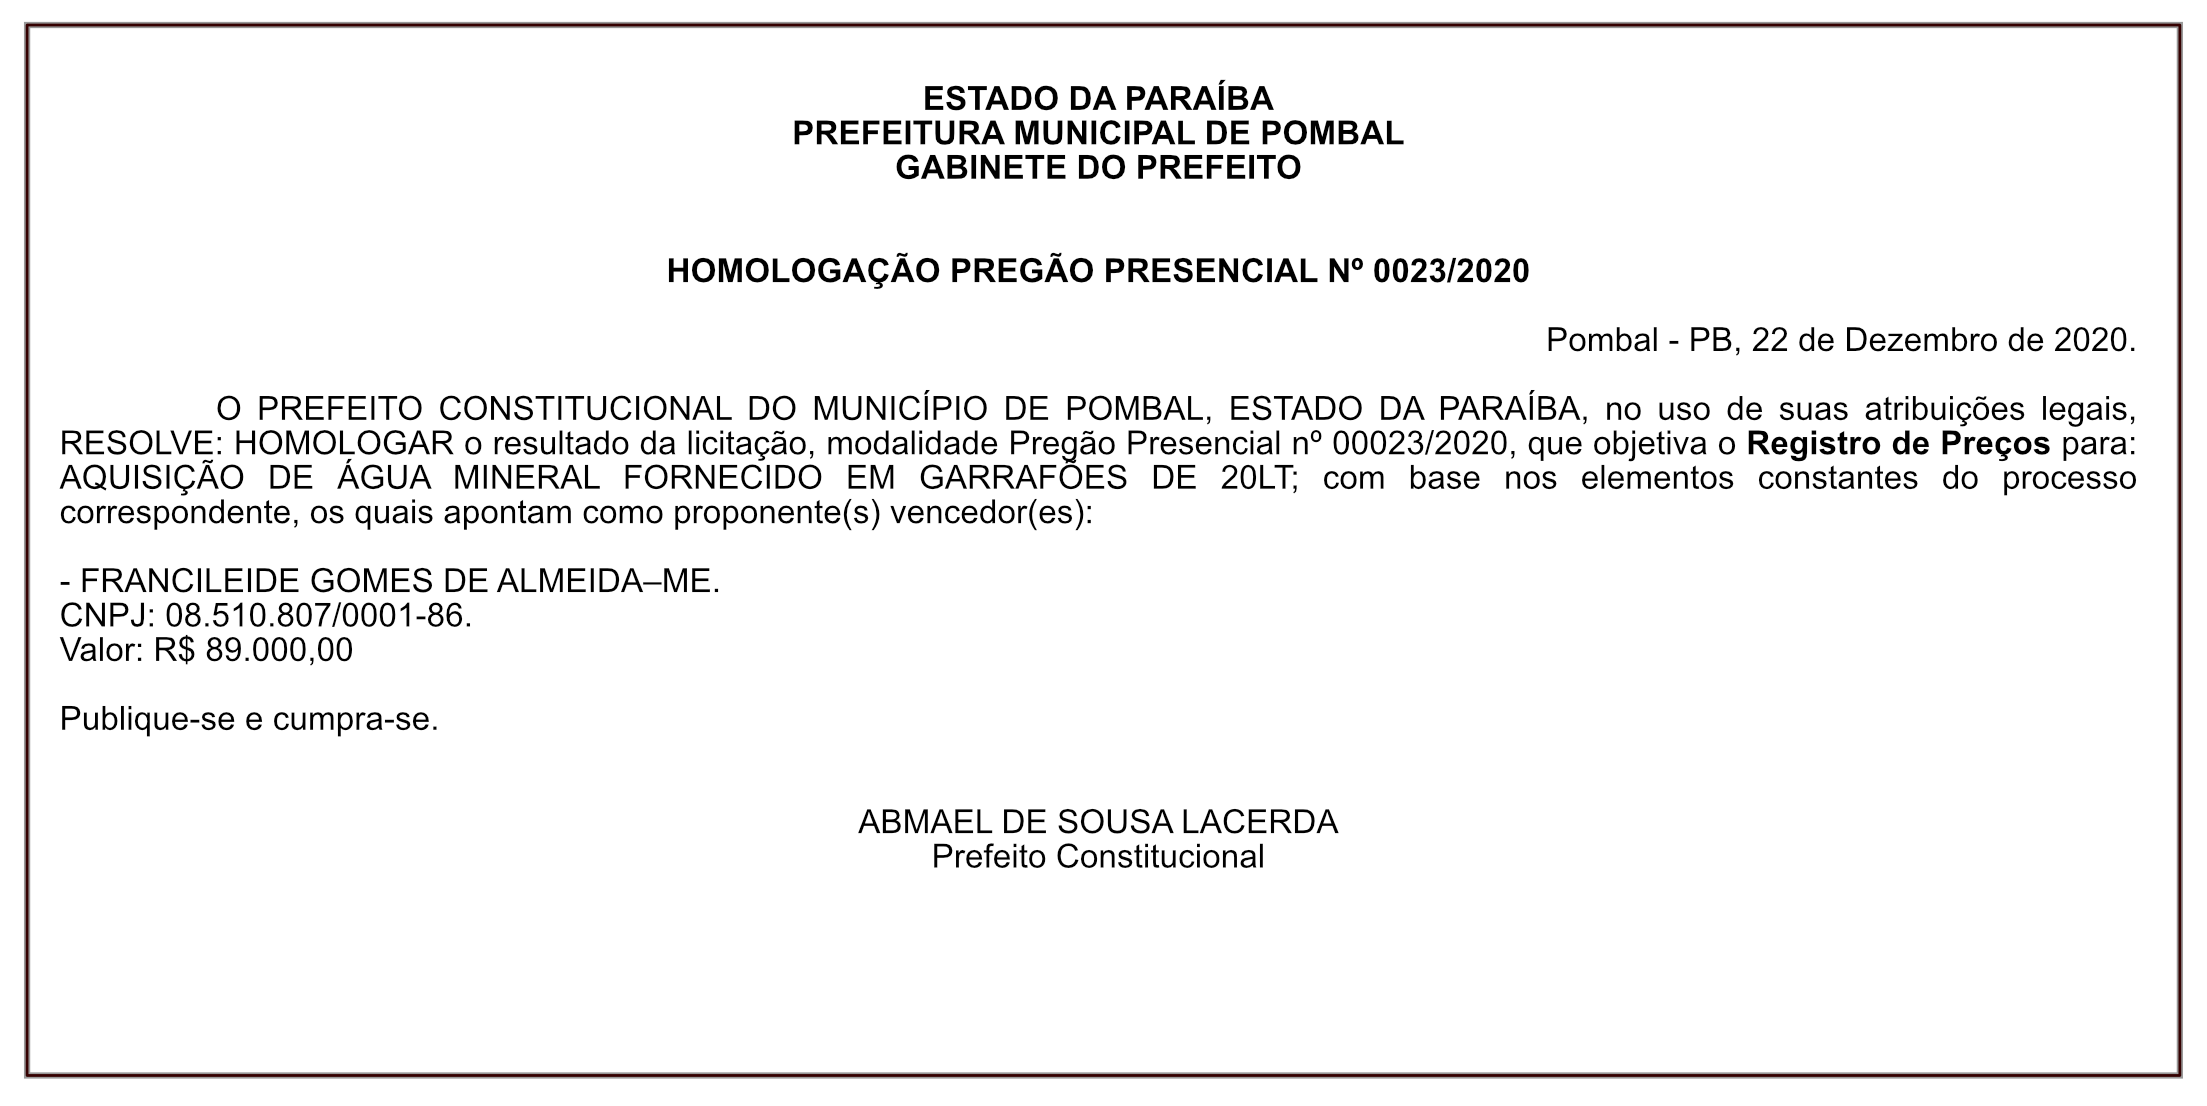 PREFEITURA MUNICIPAL DE POMBAL – HOMOLOGAÇÃO PREGÃO PRESENCIAL Nº 0023/2020